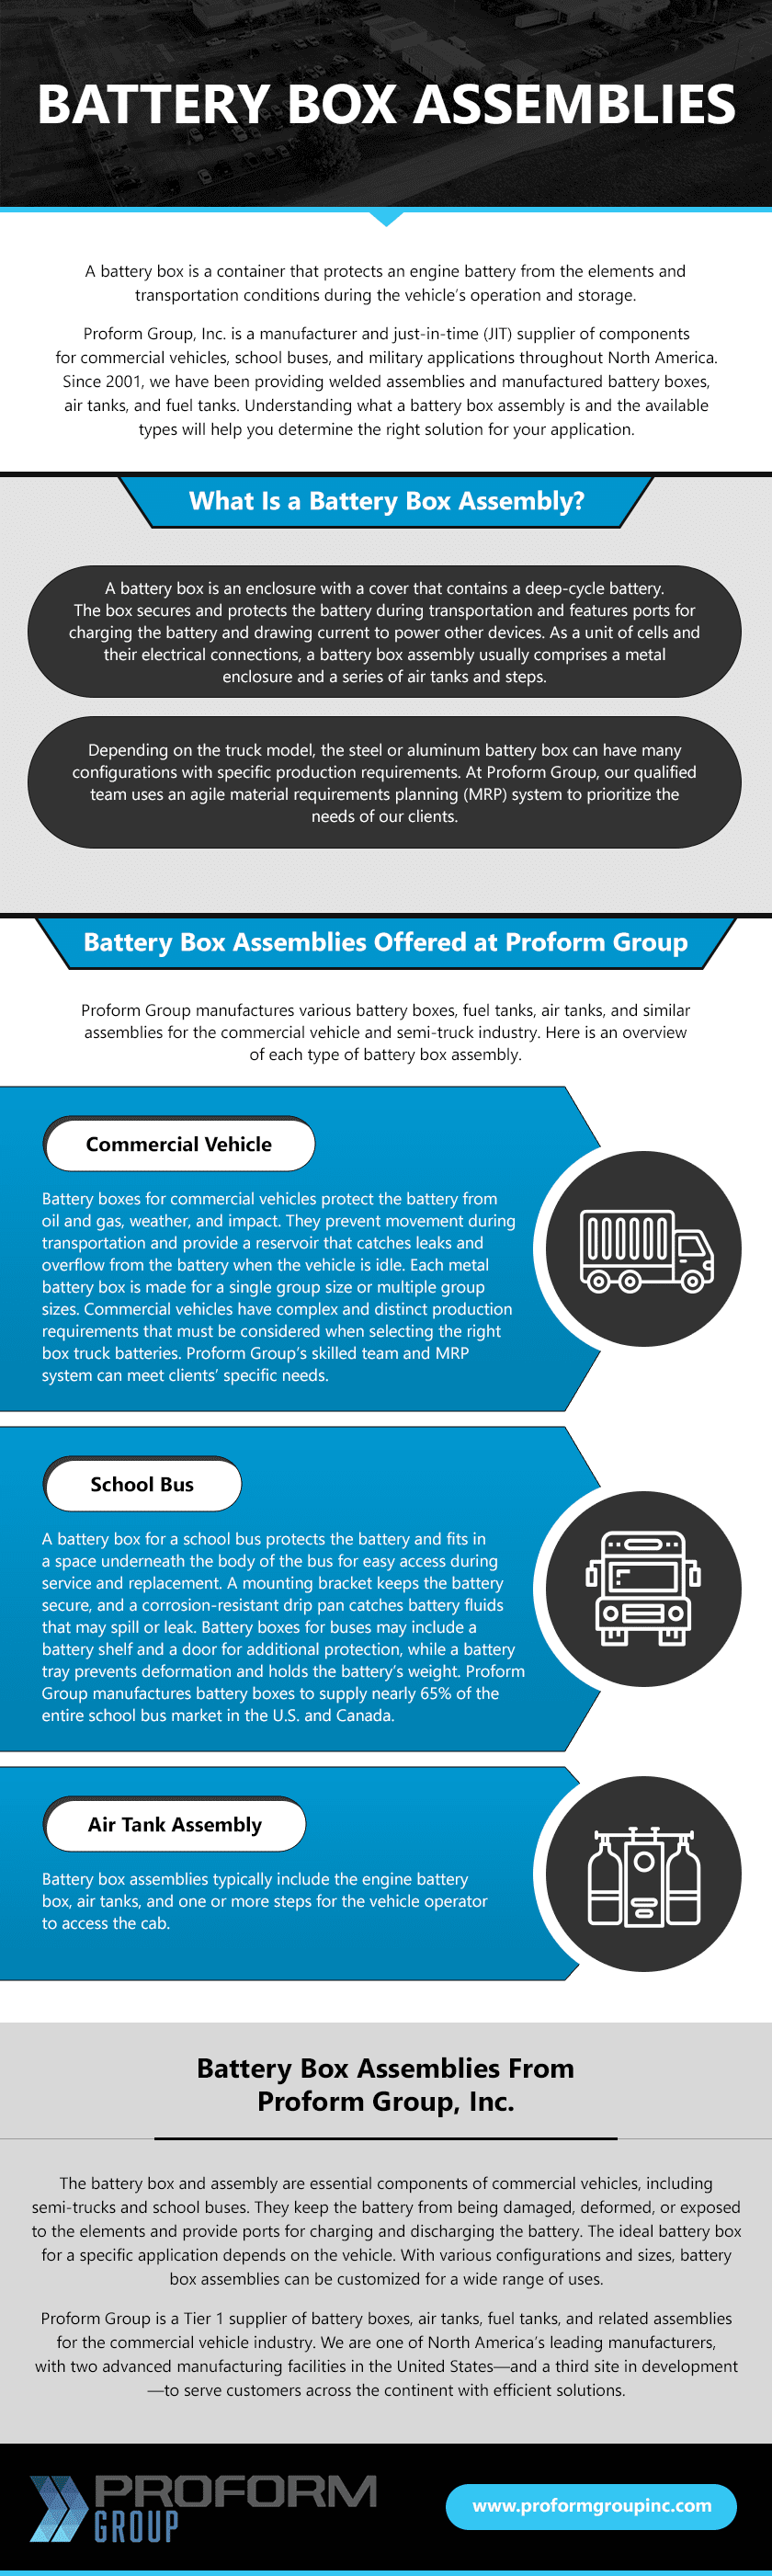 Battery Box Assemblies